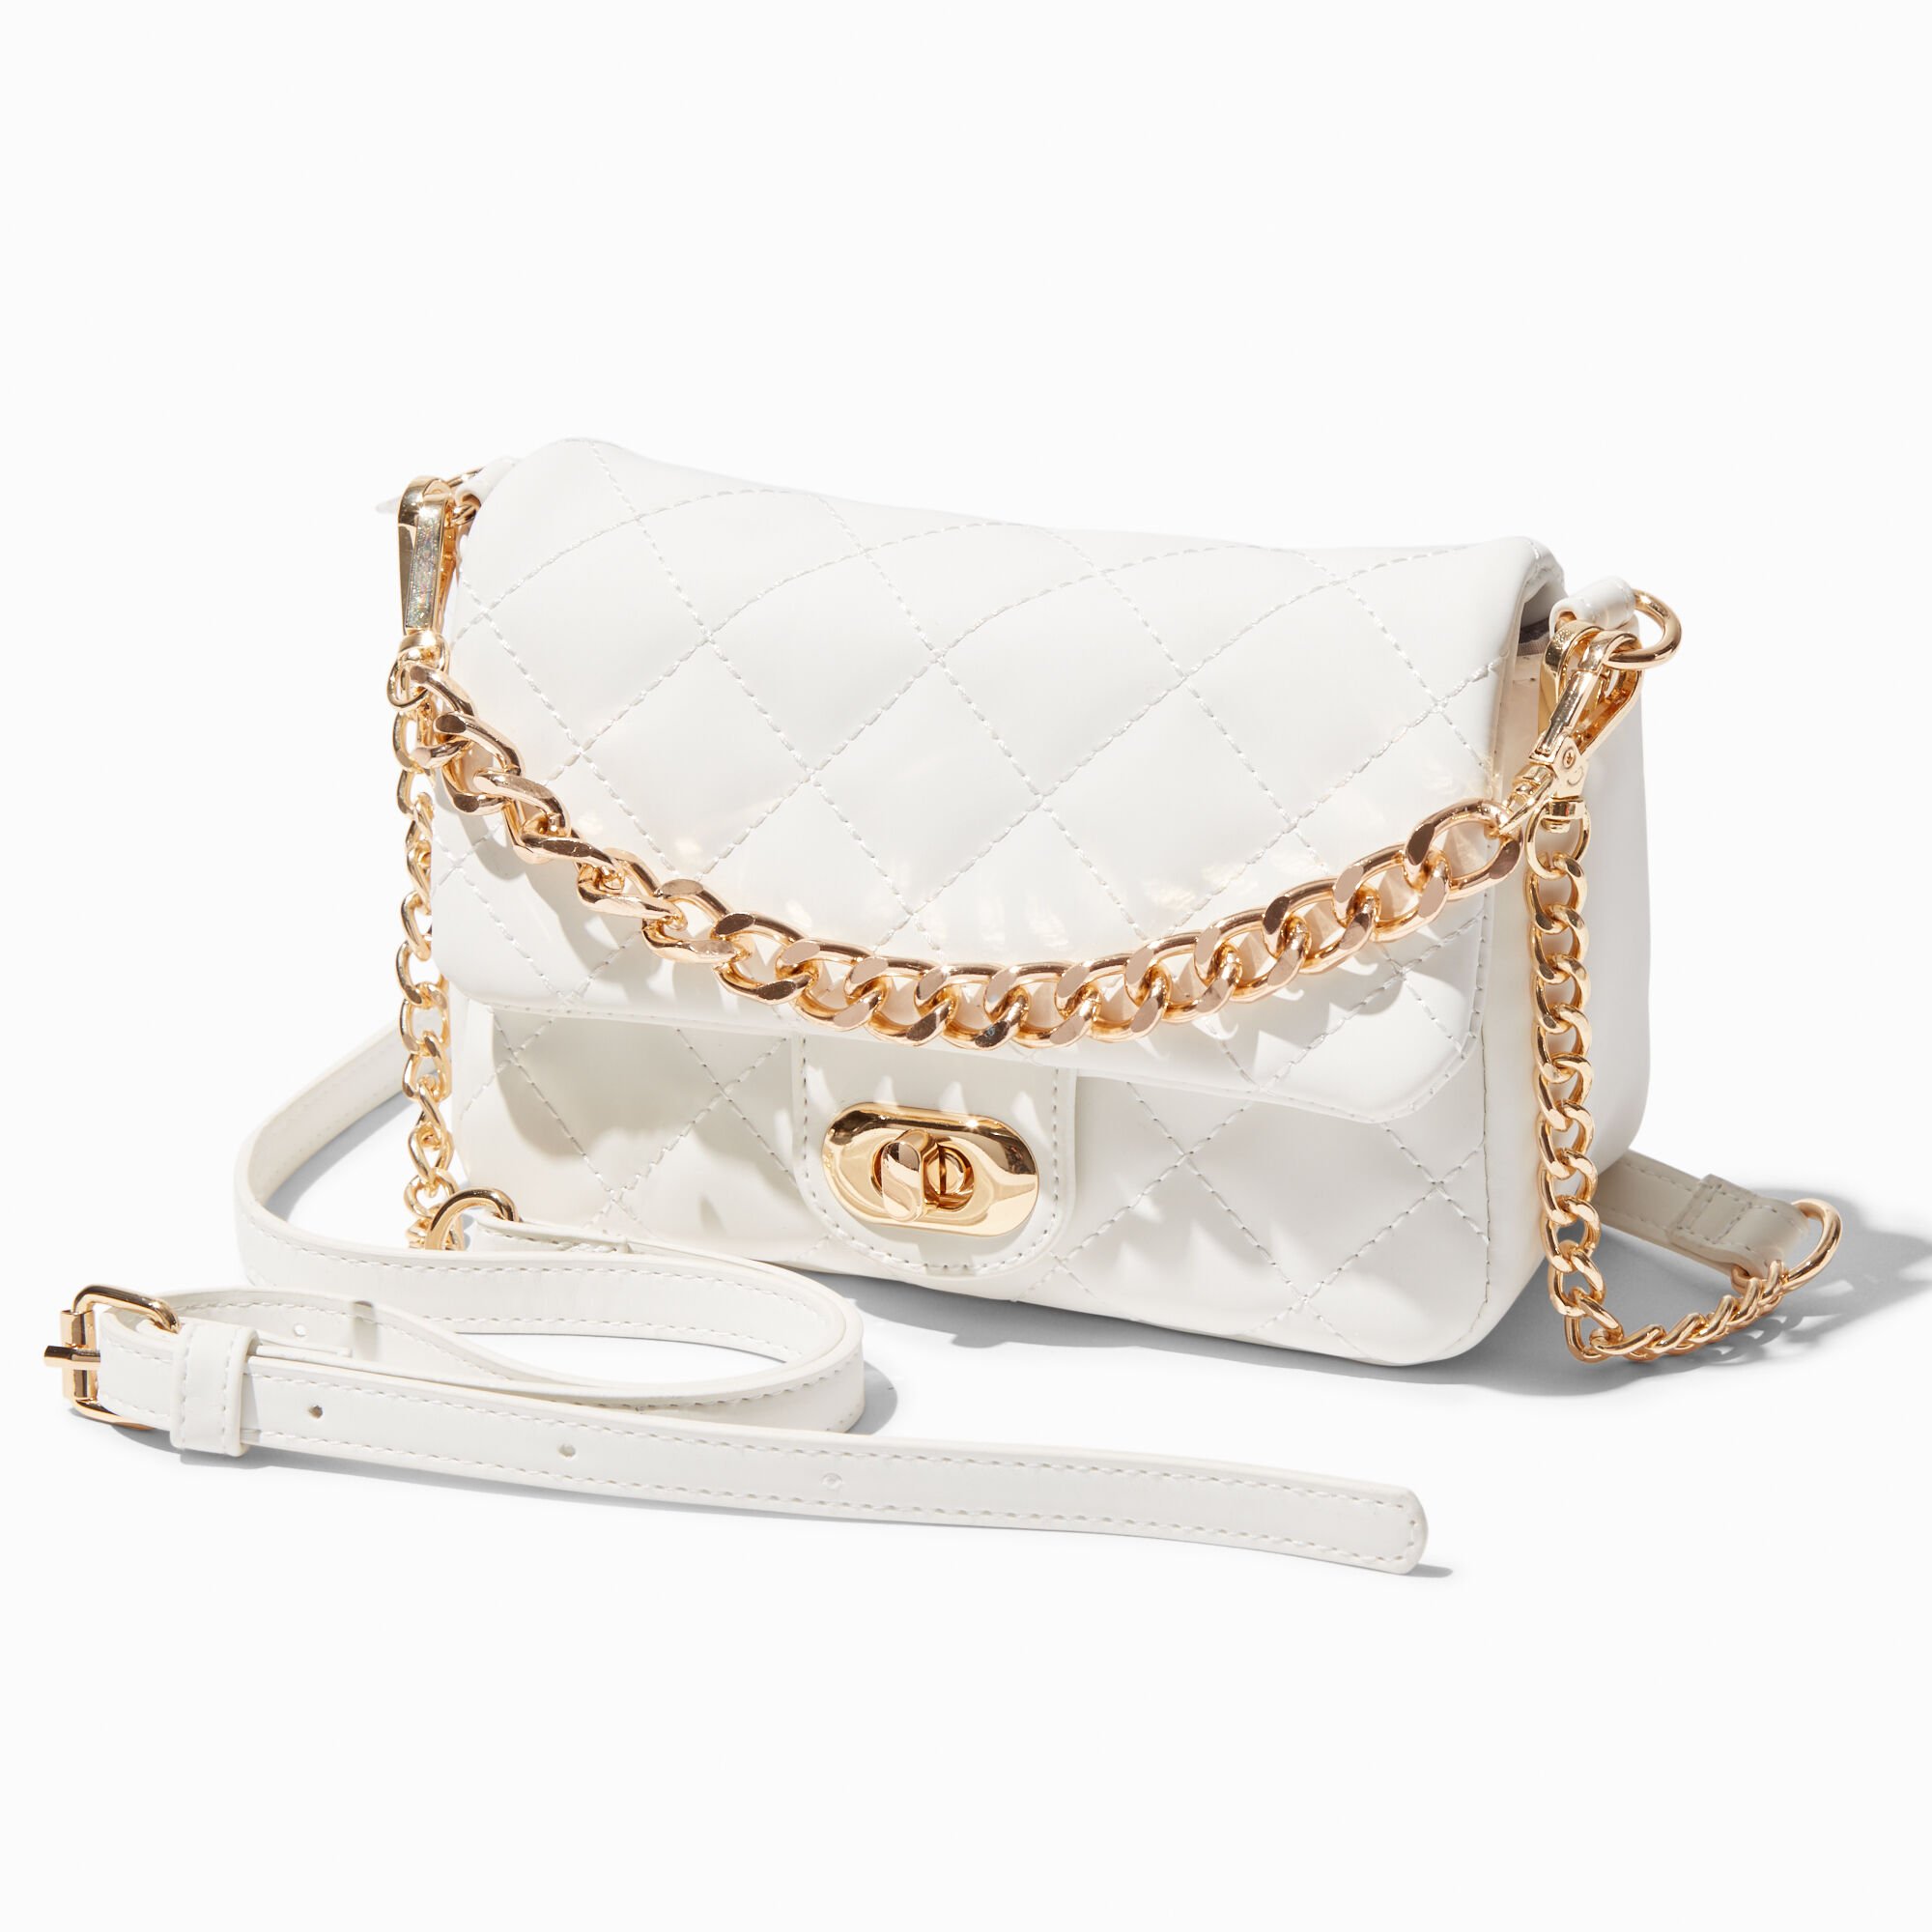 Imitation Pearl Bag Decoration Bag Strap Shoulder Bag Chain Handbag Belt